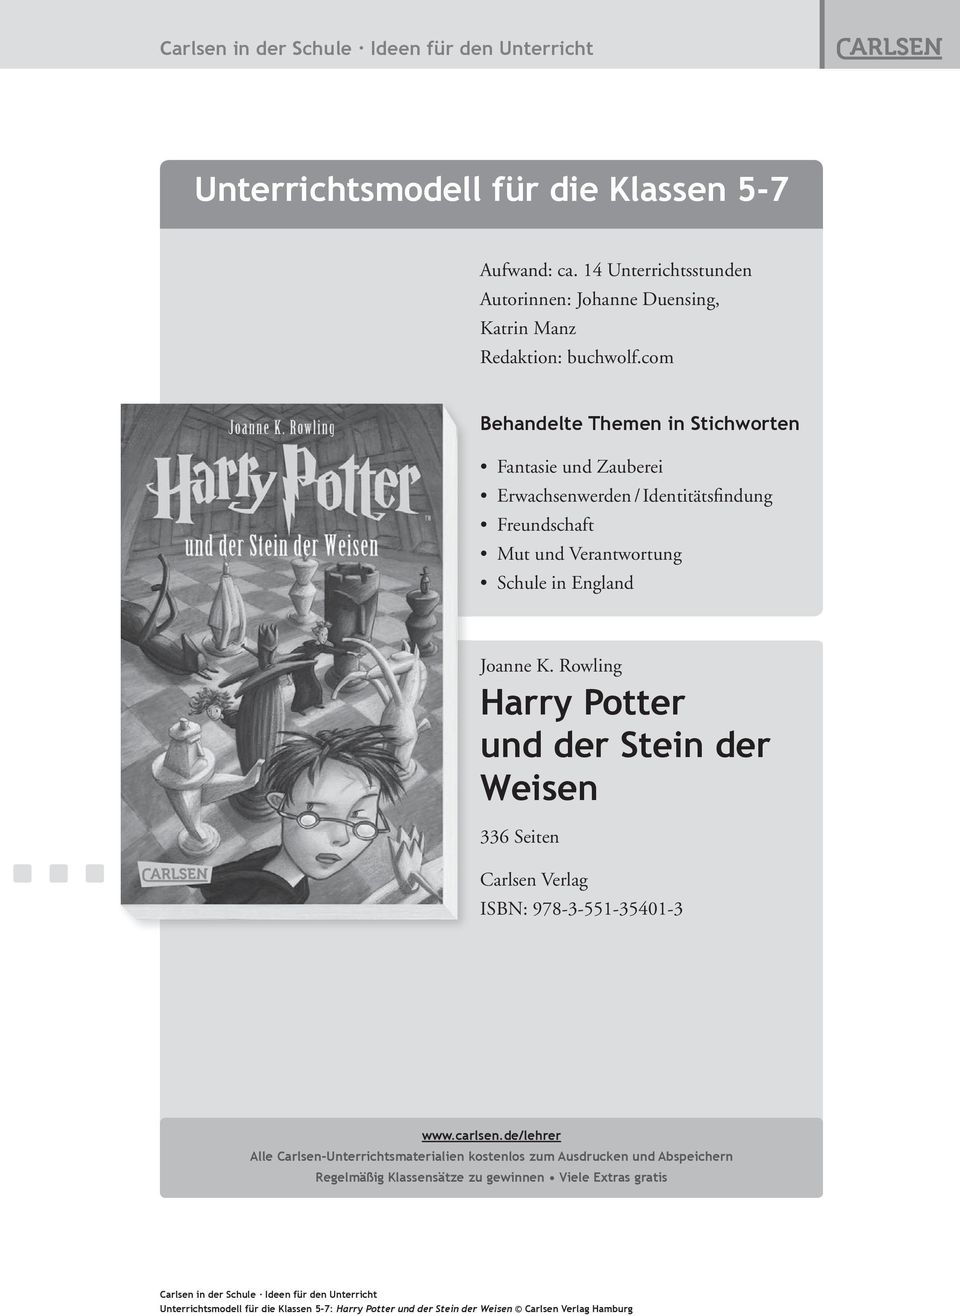 Schule in England Joanne K. Rowling Harry Potter und der Stein der Weisen 336 Seiten Carlsen Verlag ISBN: 978-3-551-35401-3 www.carlsen.